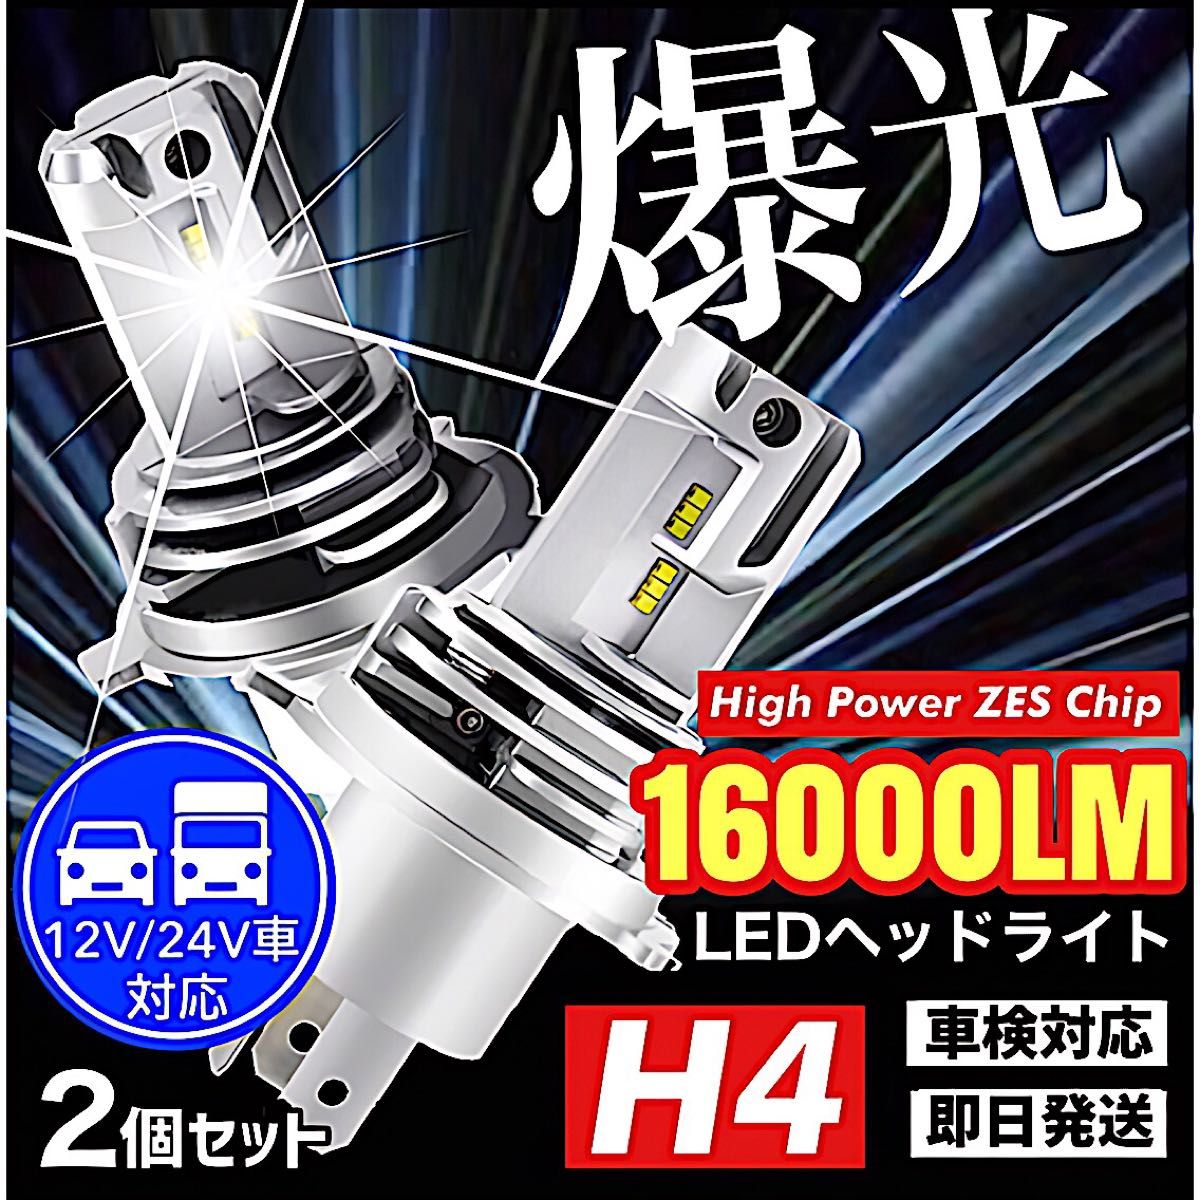 最新型 爆光 H4 LED ヘッドライト バルブ 2個 Hi/Lo 16000LM 12V 24V 6000K ホワイト 車検対応